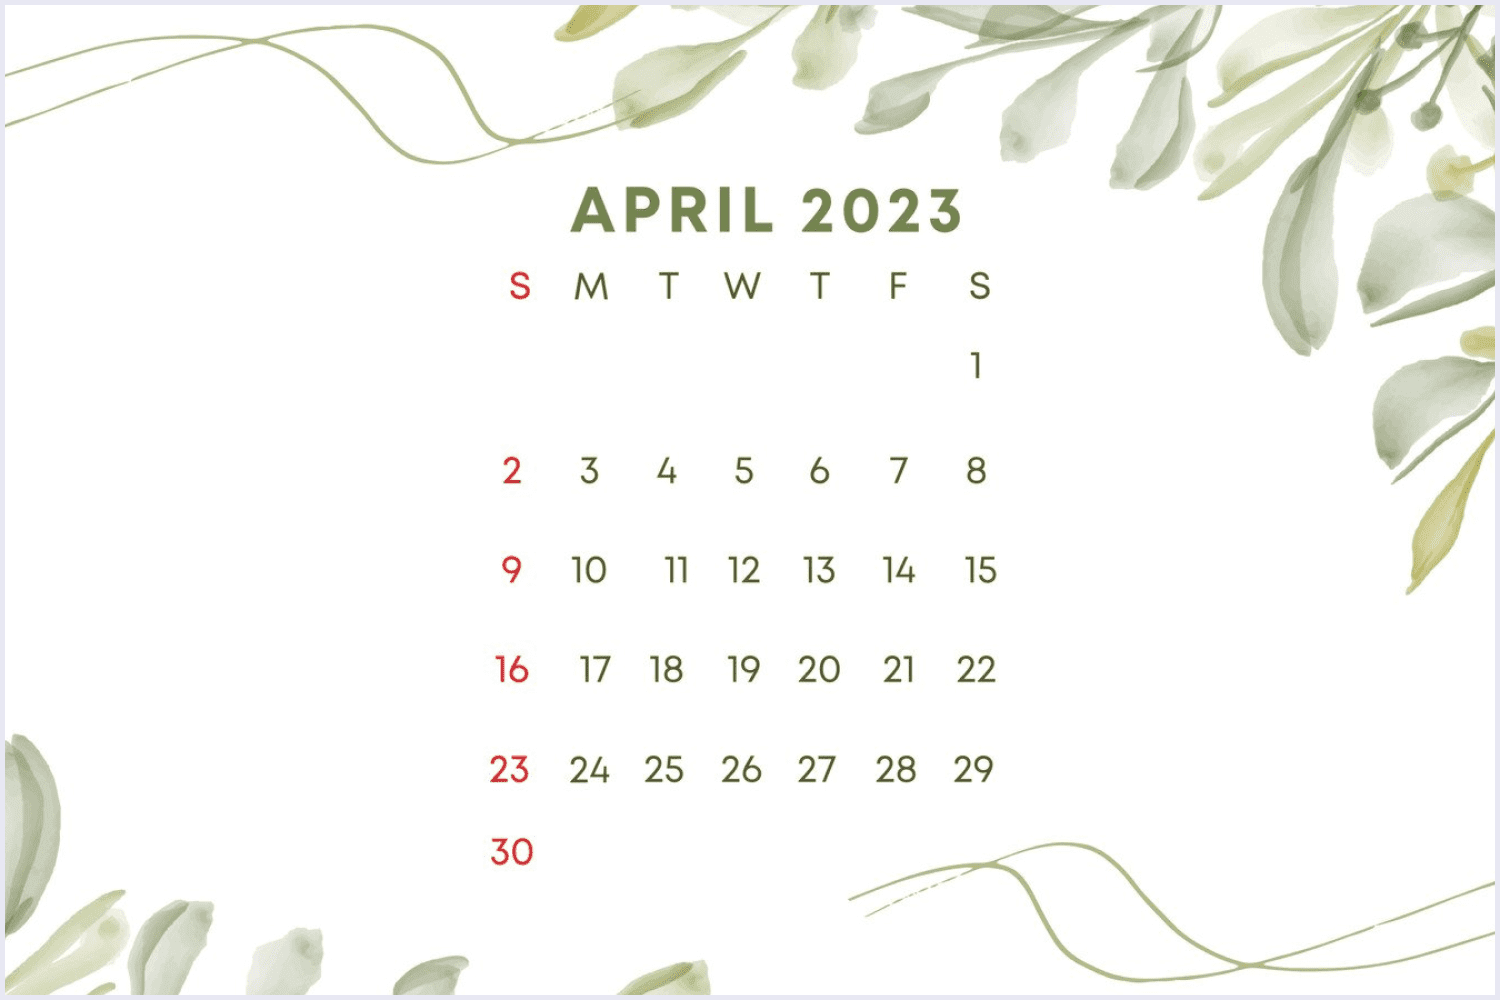 Обои на телефон с календарем. April Wallpaper Calendar. Гугл календарь 2023. Calendar background. Календарь апрель 2023.